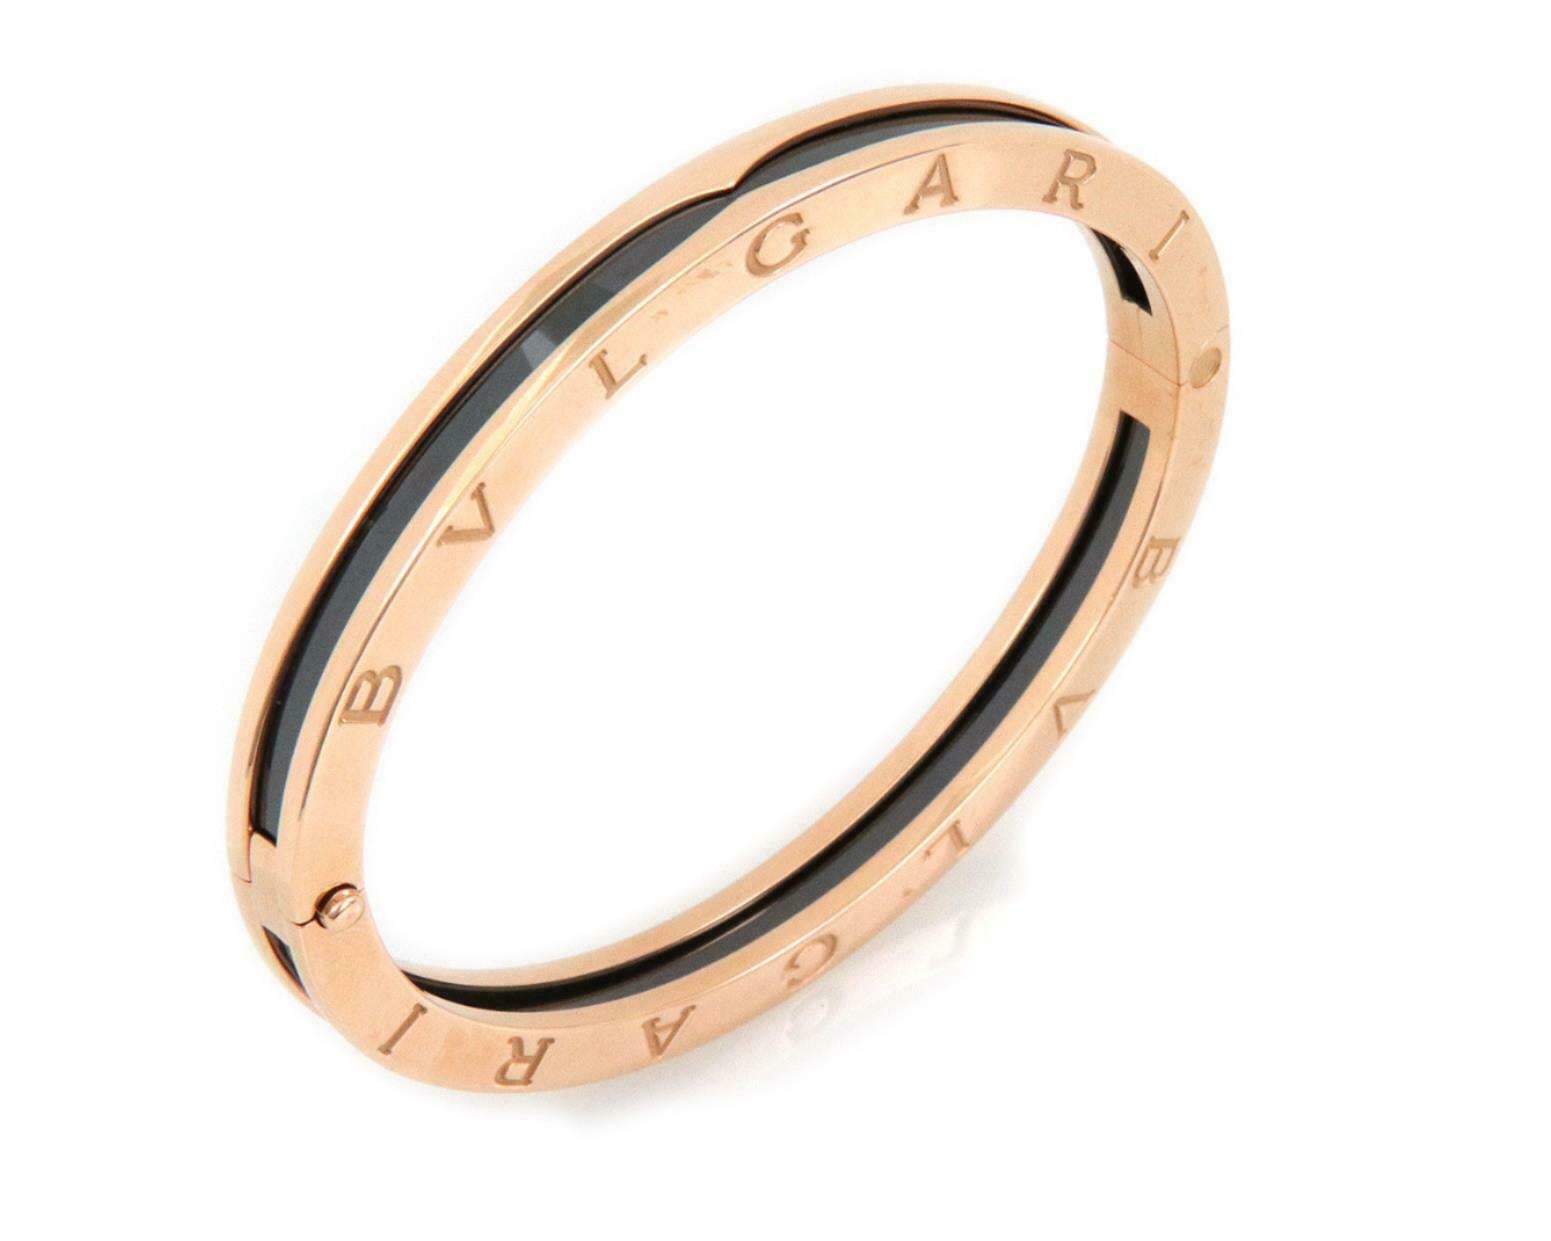 Sophistiqué et authentique par Bvlgari de la Collection S.zero1. Ce magnifique bracelet à charnière est réalisé en or rose 18 carats avec de la céramique noire et présente une forme ovale. La charnière se trouve d'un côté et le fermoir à glissière